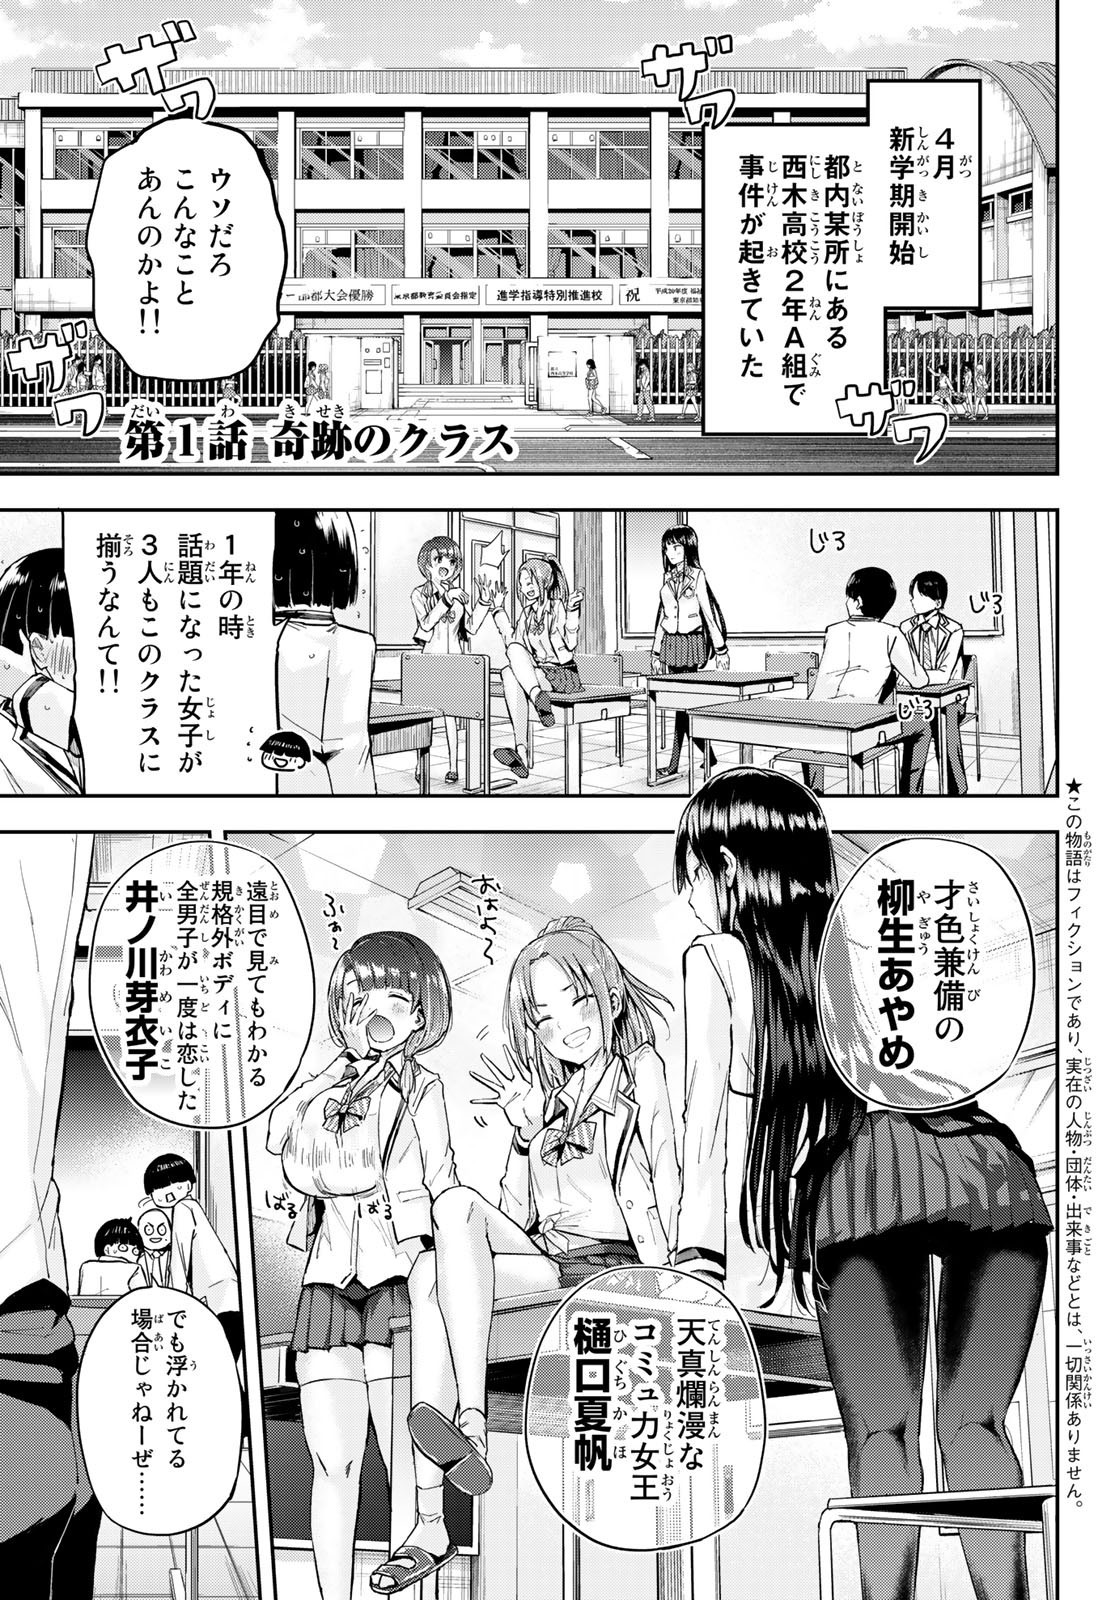 Kitazawa-kun wa A Class - Chapter 001 - Page 4